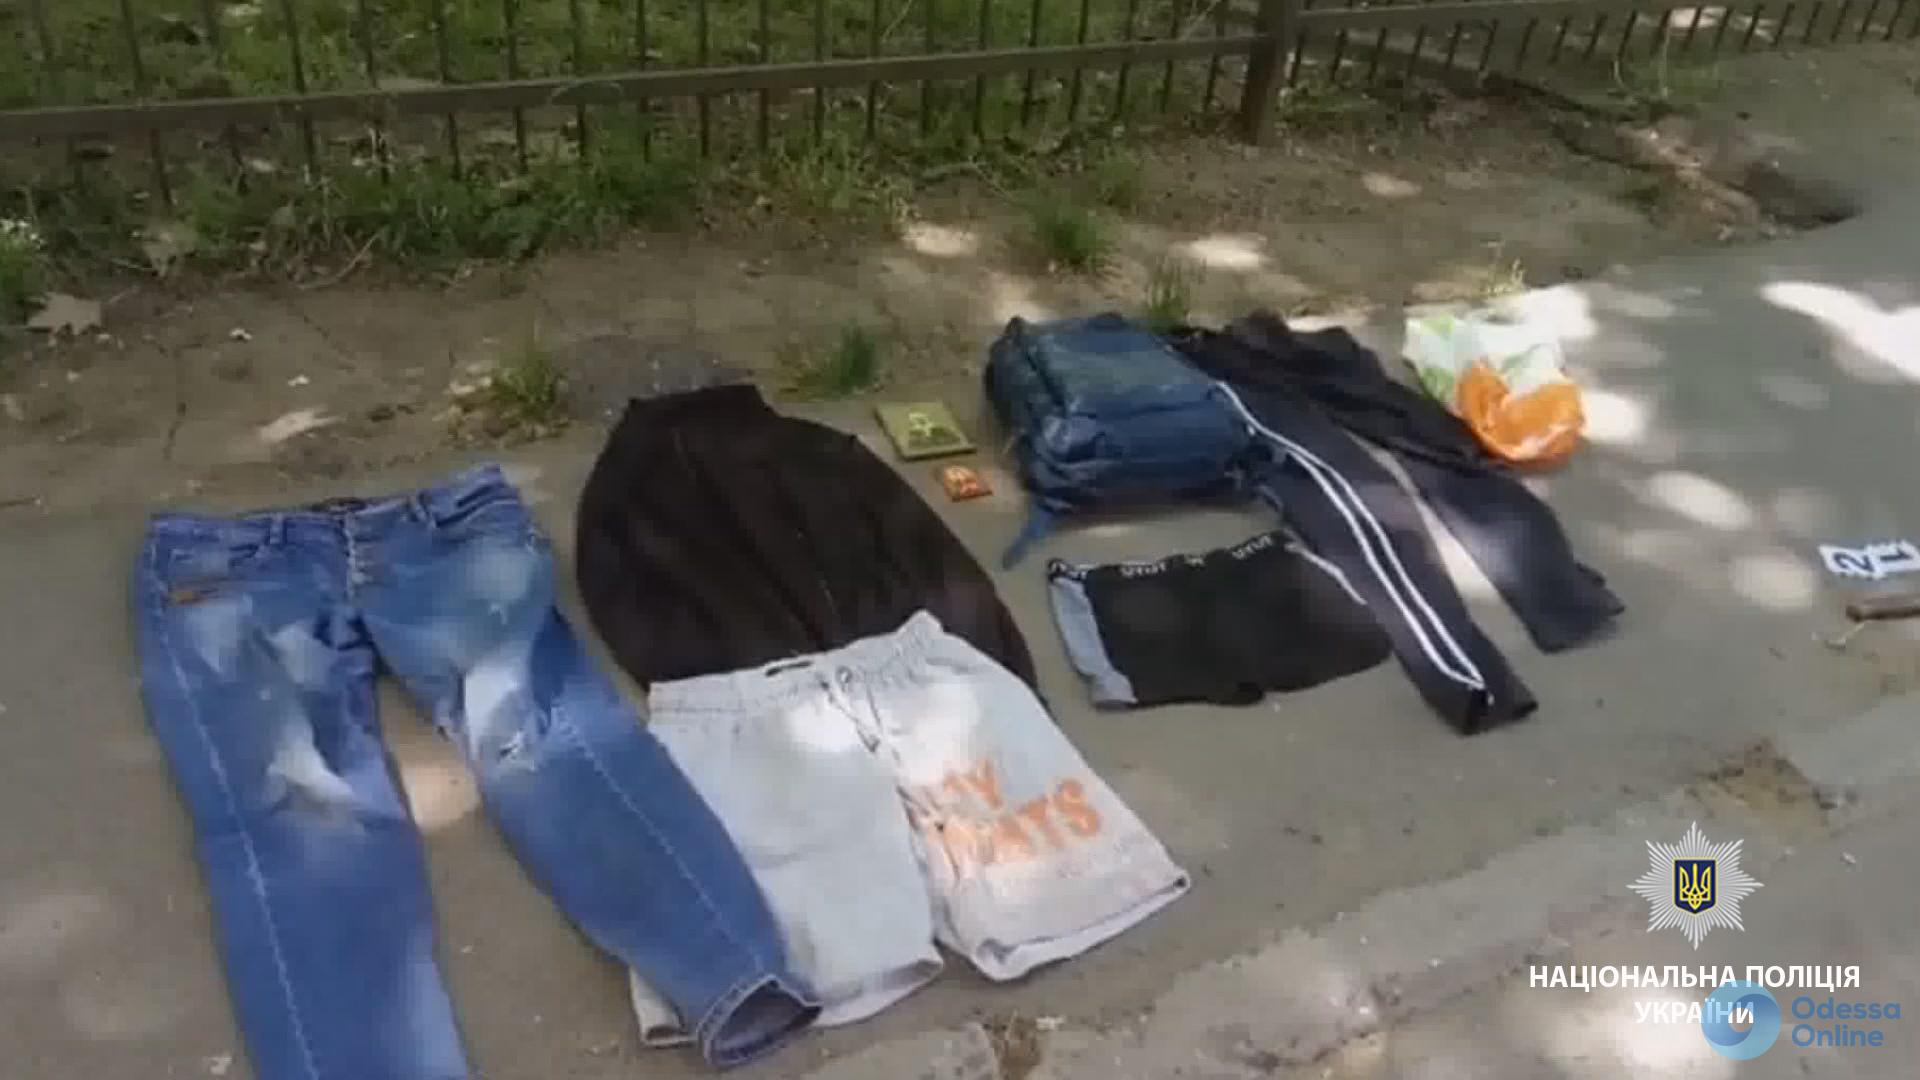 Черноморск: на женщину напал разбойник с молотком